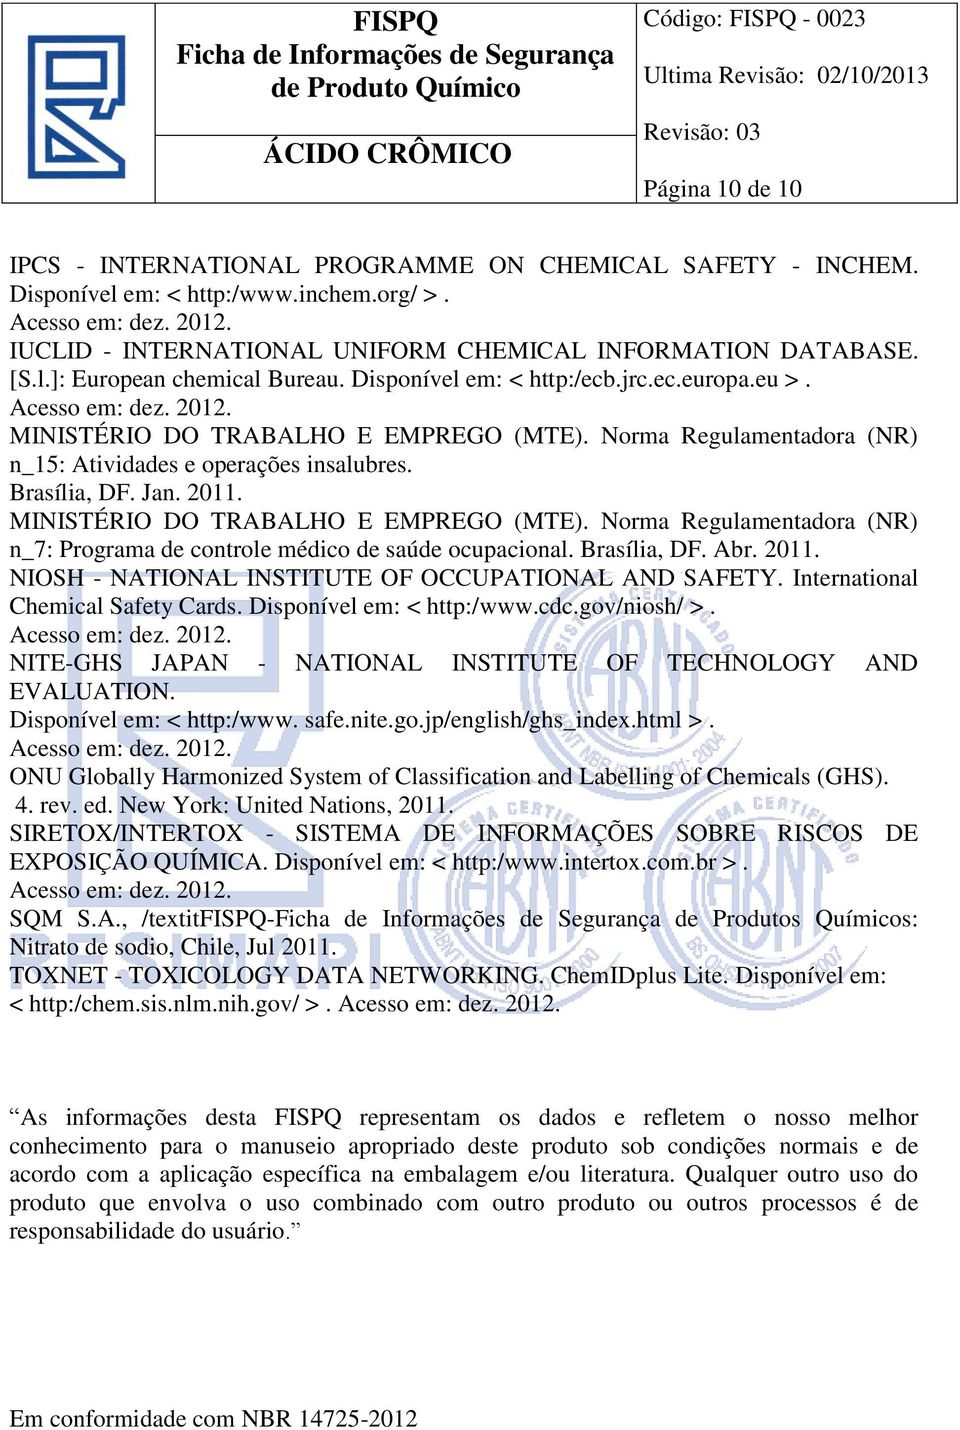 MINISTÉRIO DO TRABALHO E EMPREGO (MTE). Norma Regulamentadora (NR) n_7: Programa de controle médico de saúde ocupacional. Brasília, DF. Abr. 2011.